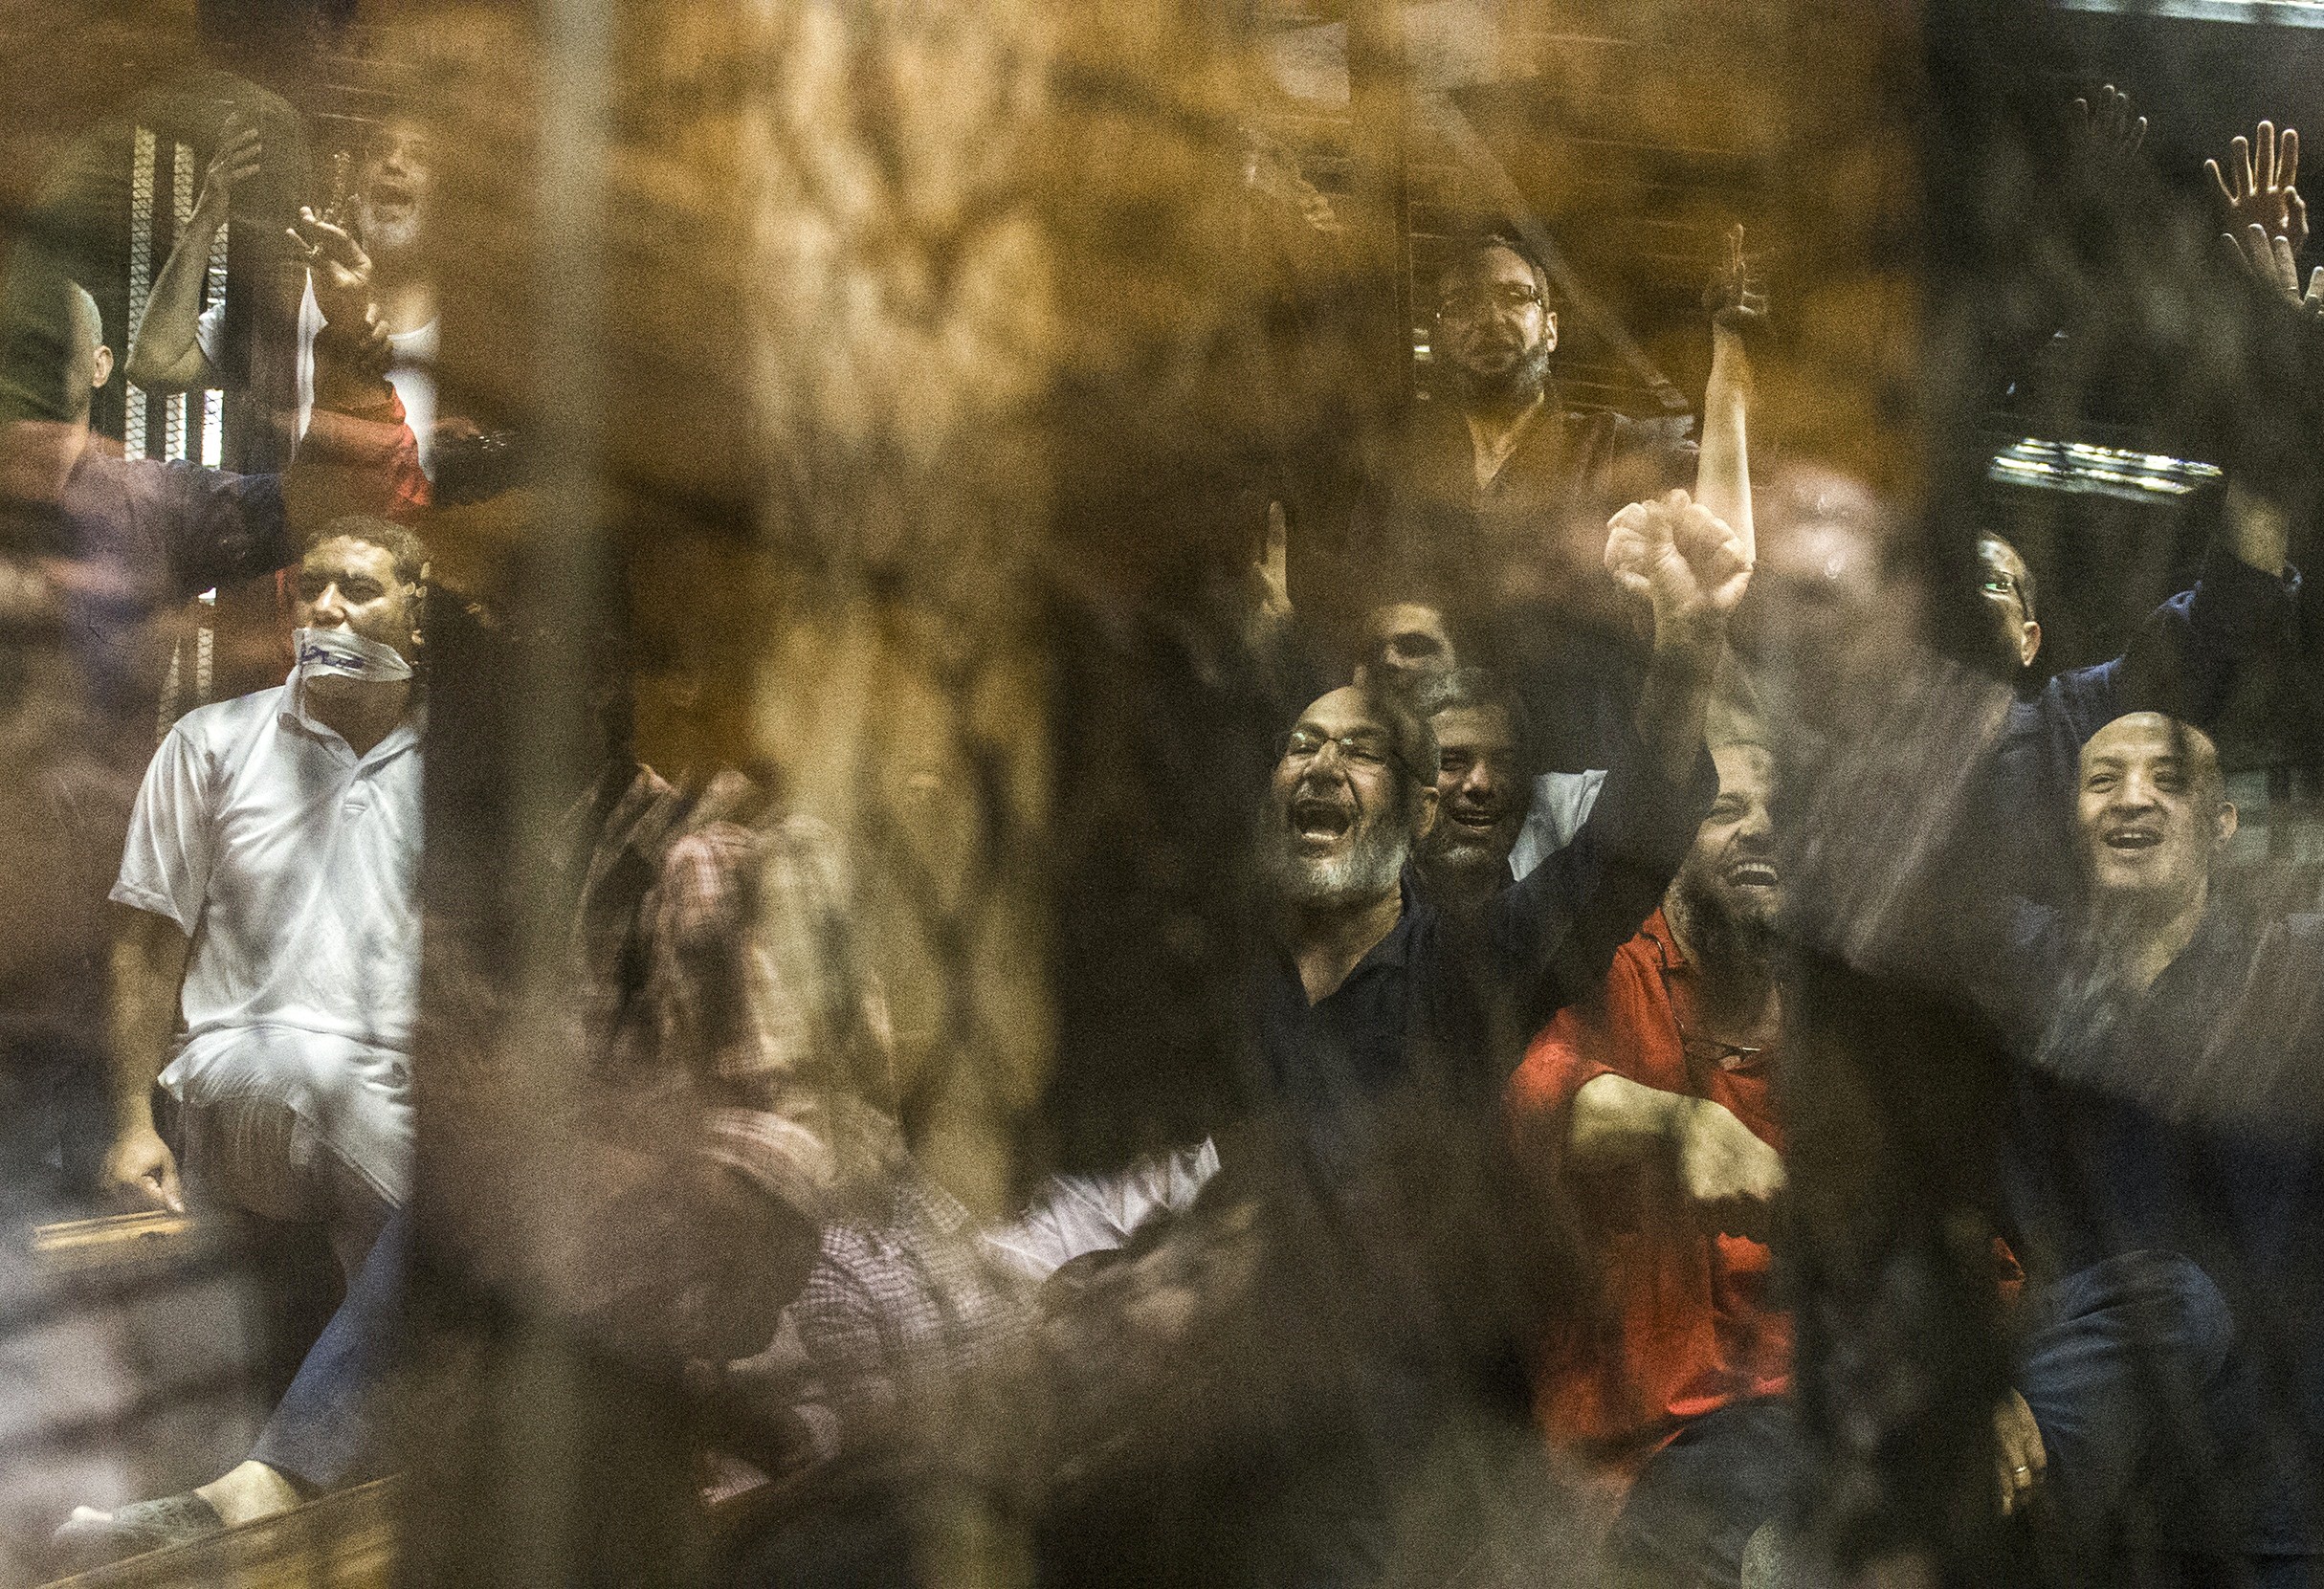 Egypt Intensifies Crackdown on Muslim Brotherhood